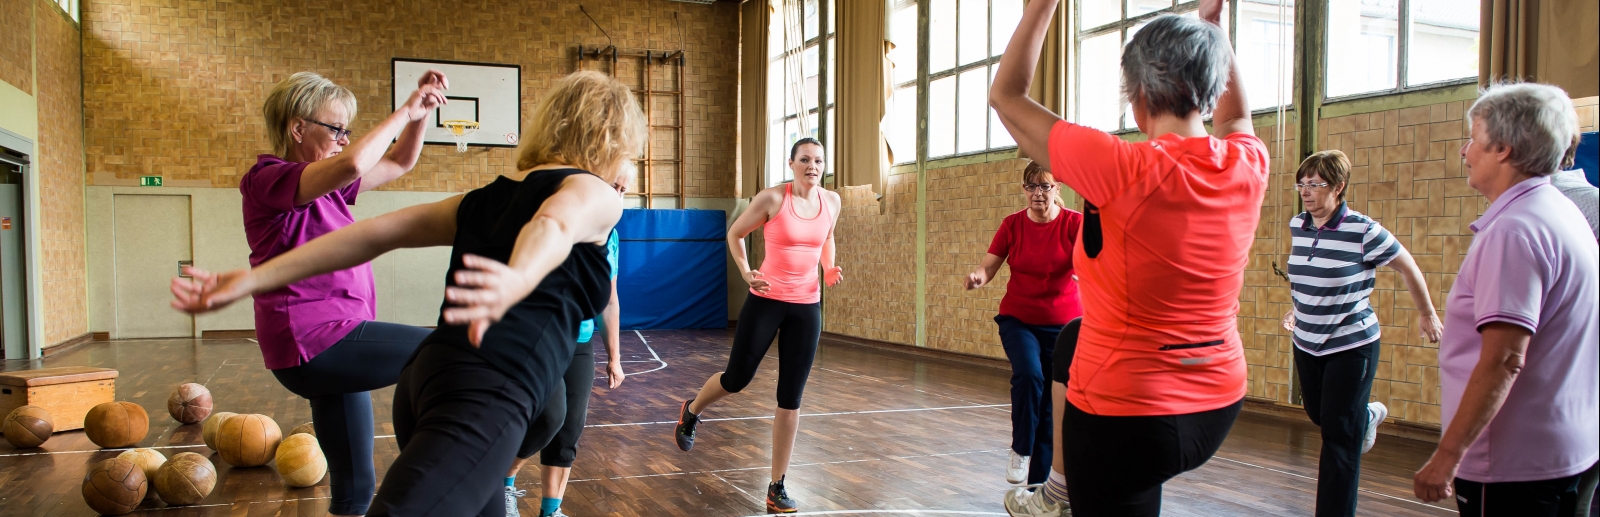 Neun Damen in Sportbekleidung stehen in der Mitter einer Sporthalle im Kreis und machen Aufwärmübungen.